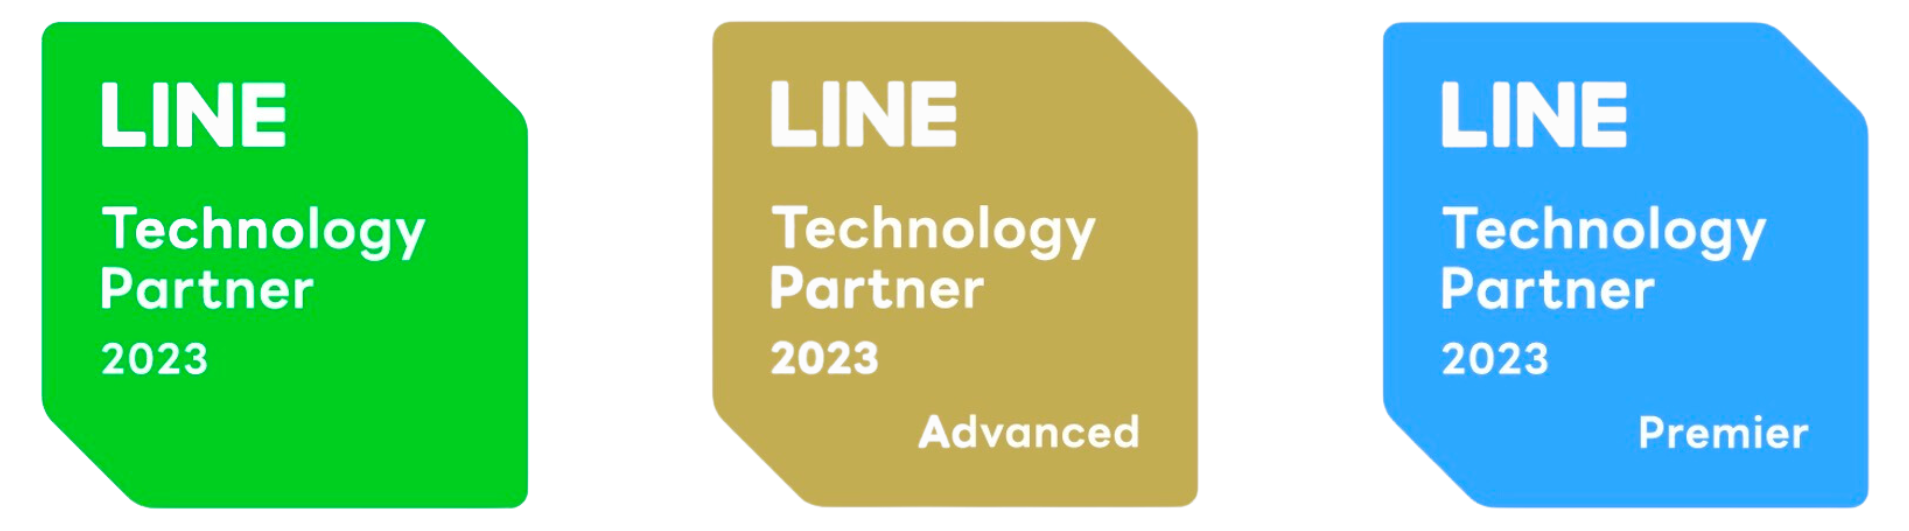 LINE Technology Partner badges.